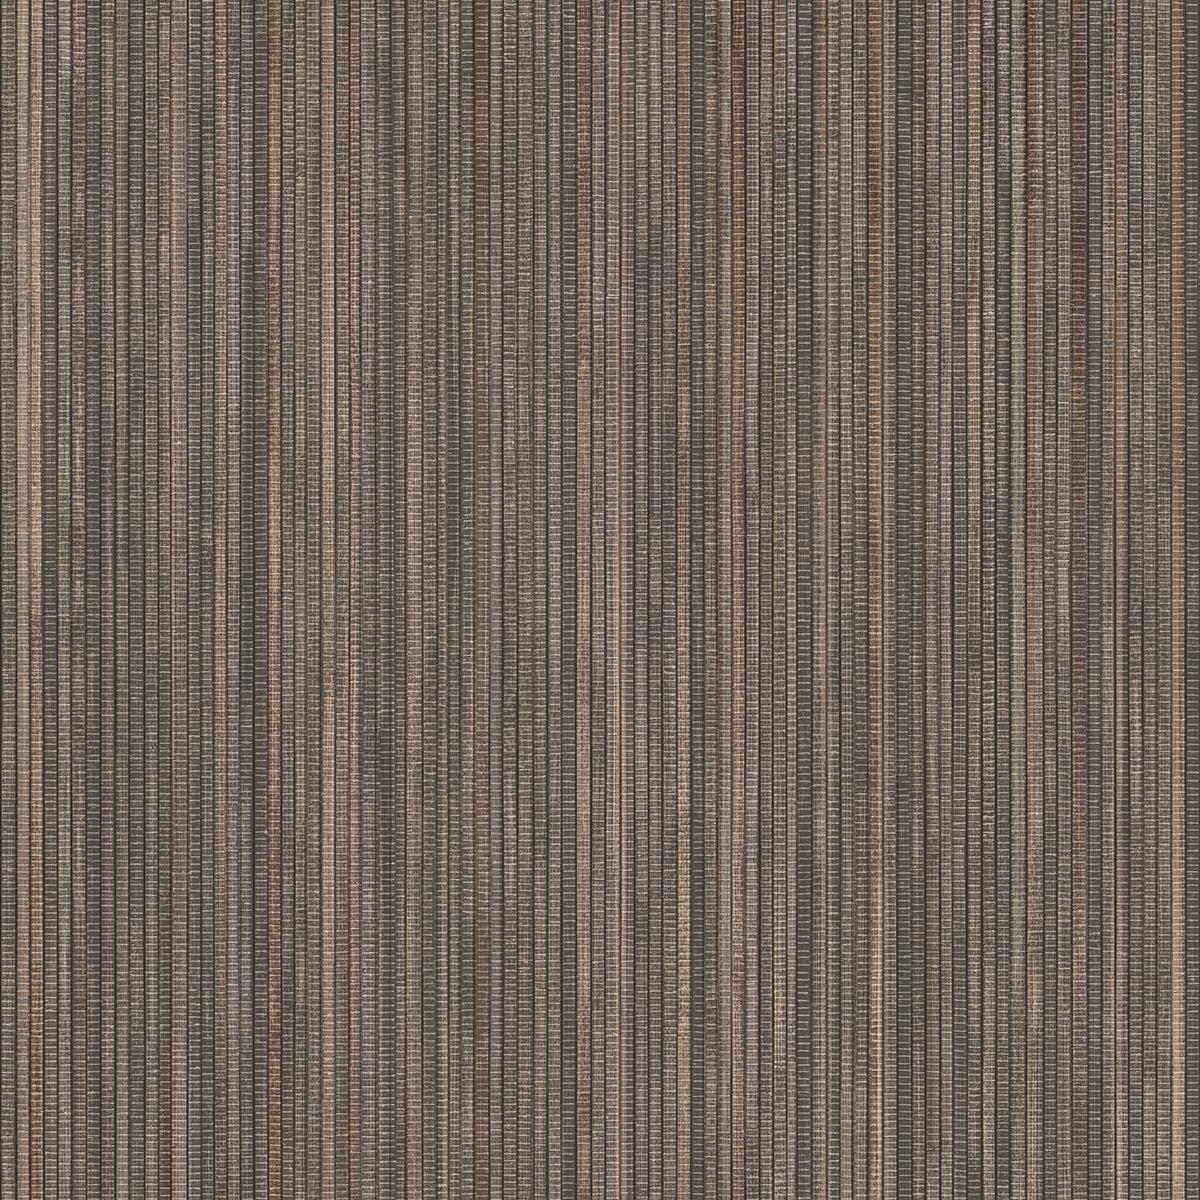 textured grasscloth wallpaper,brown,wood,beige,flooring,floor